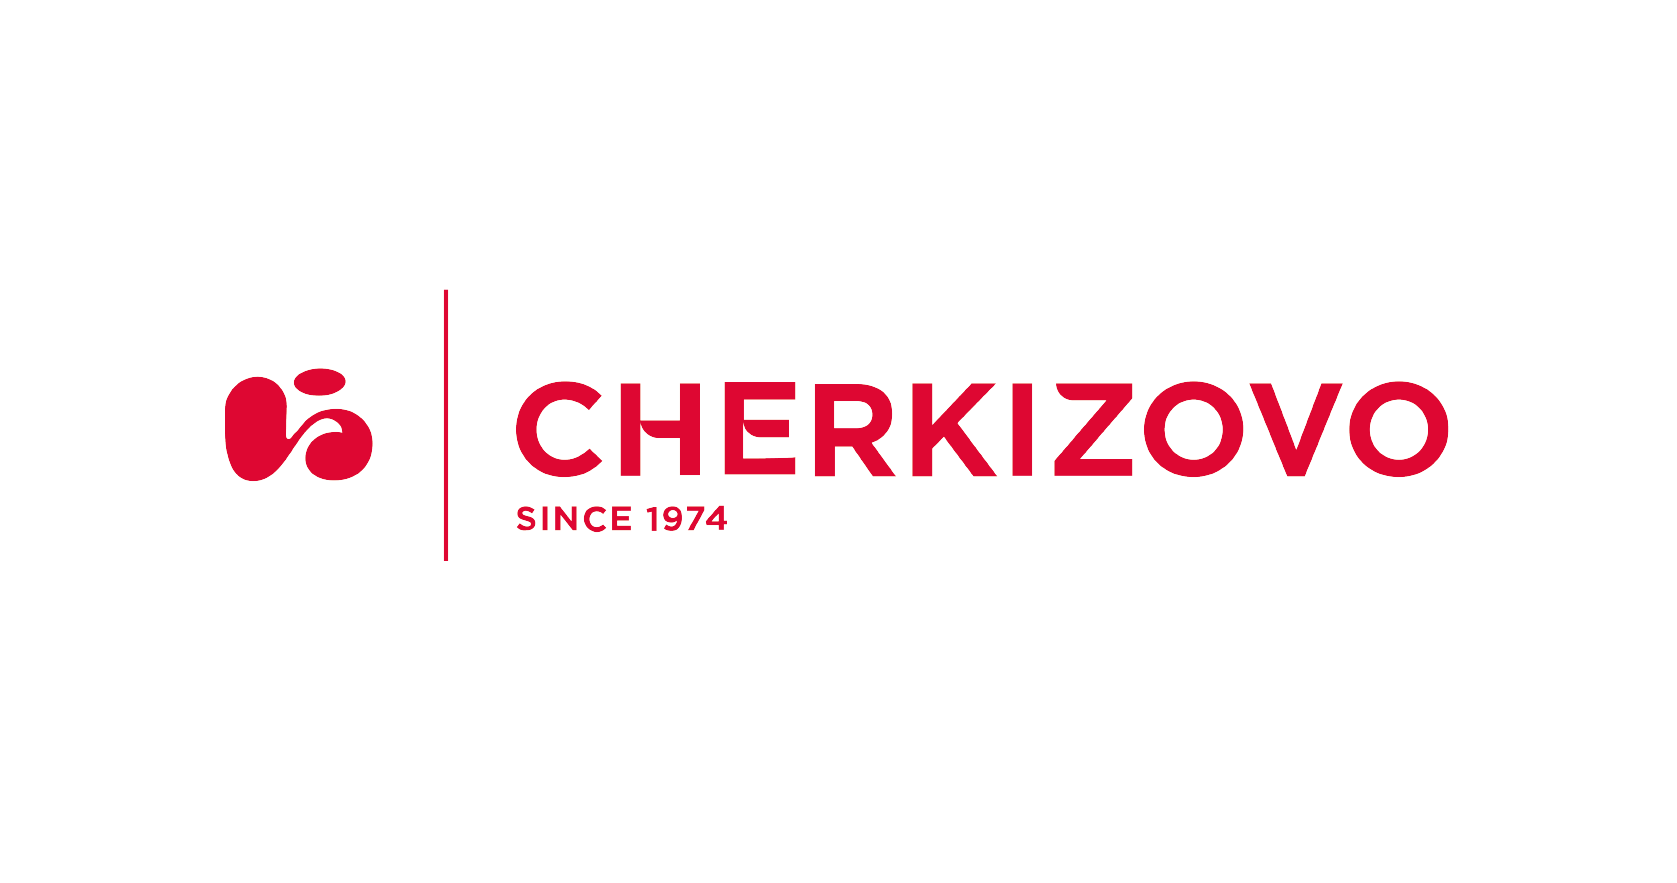 Cherkizovo